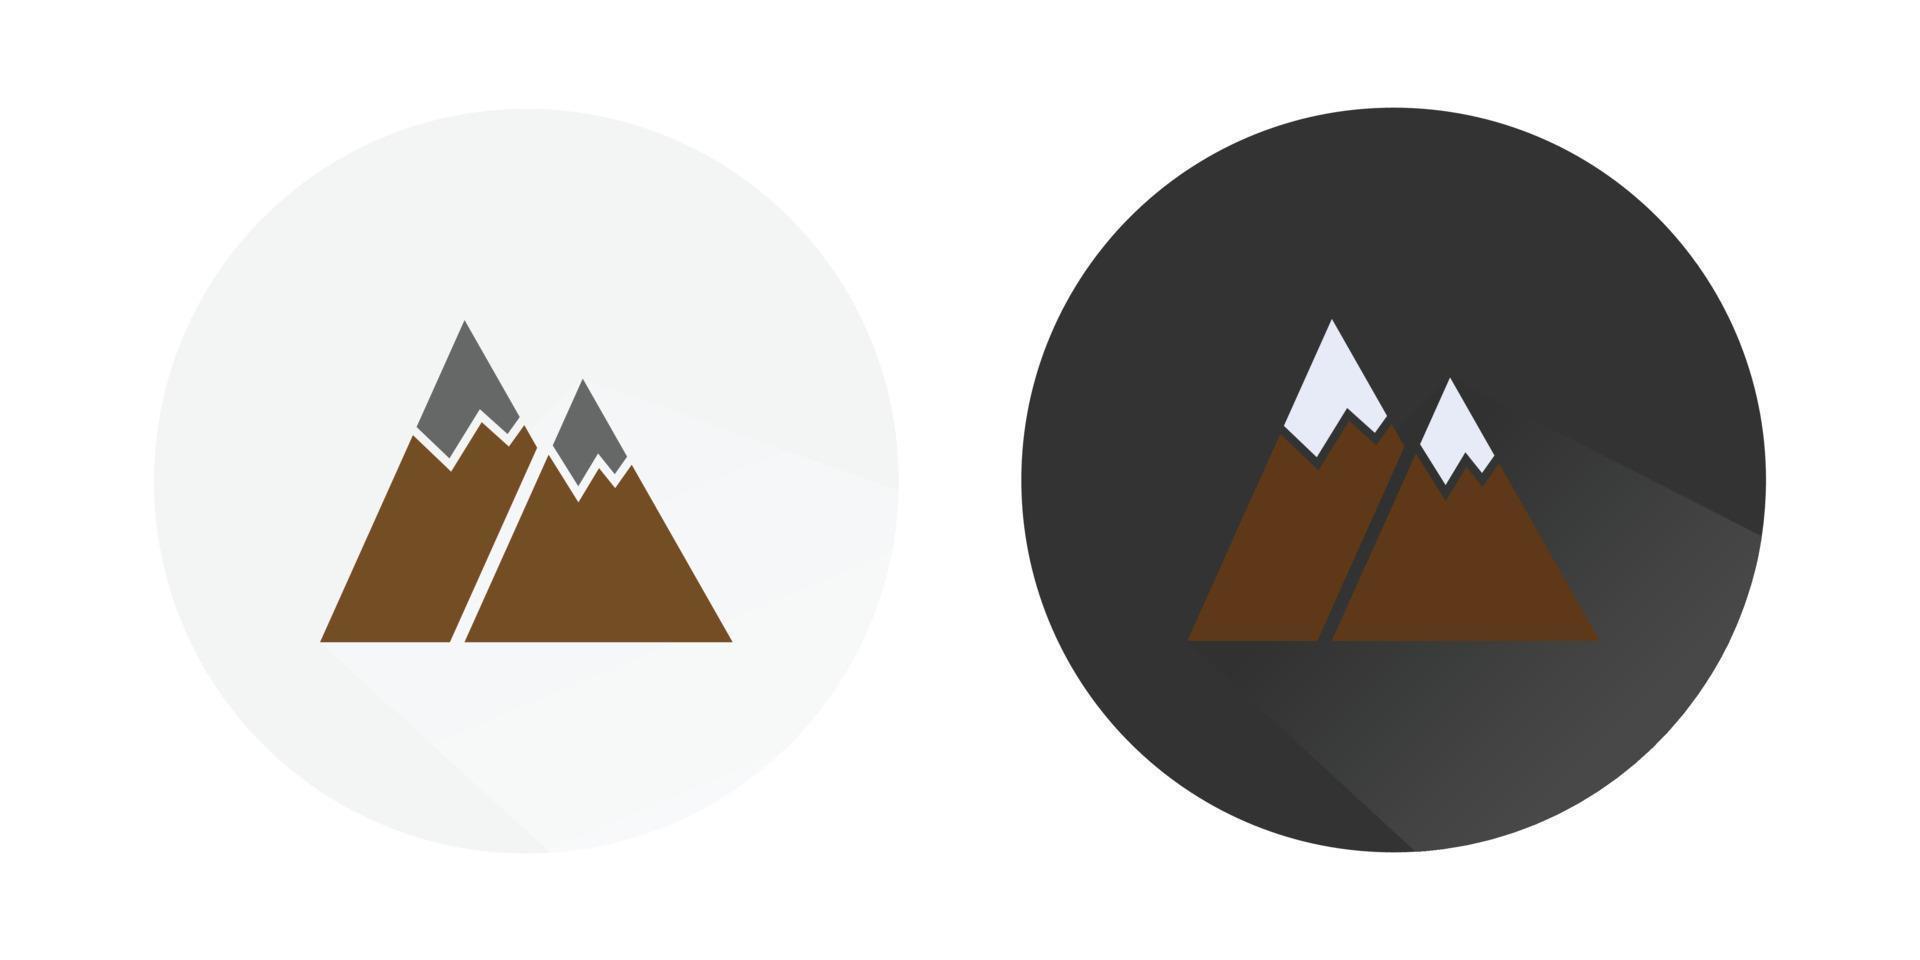 Mountain Icons, Mission icon, Mountain peak icon, Mountain, Volcano, Summit, Peak Icon, mountain logo Colorful vector icons